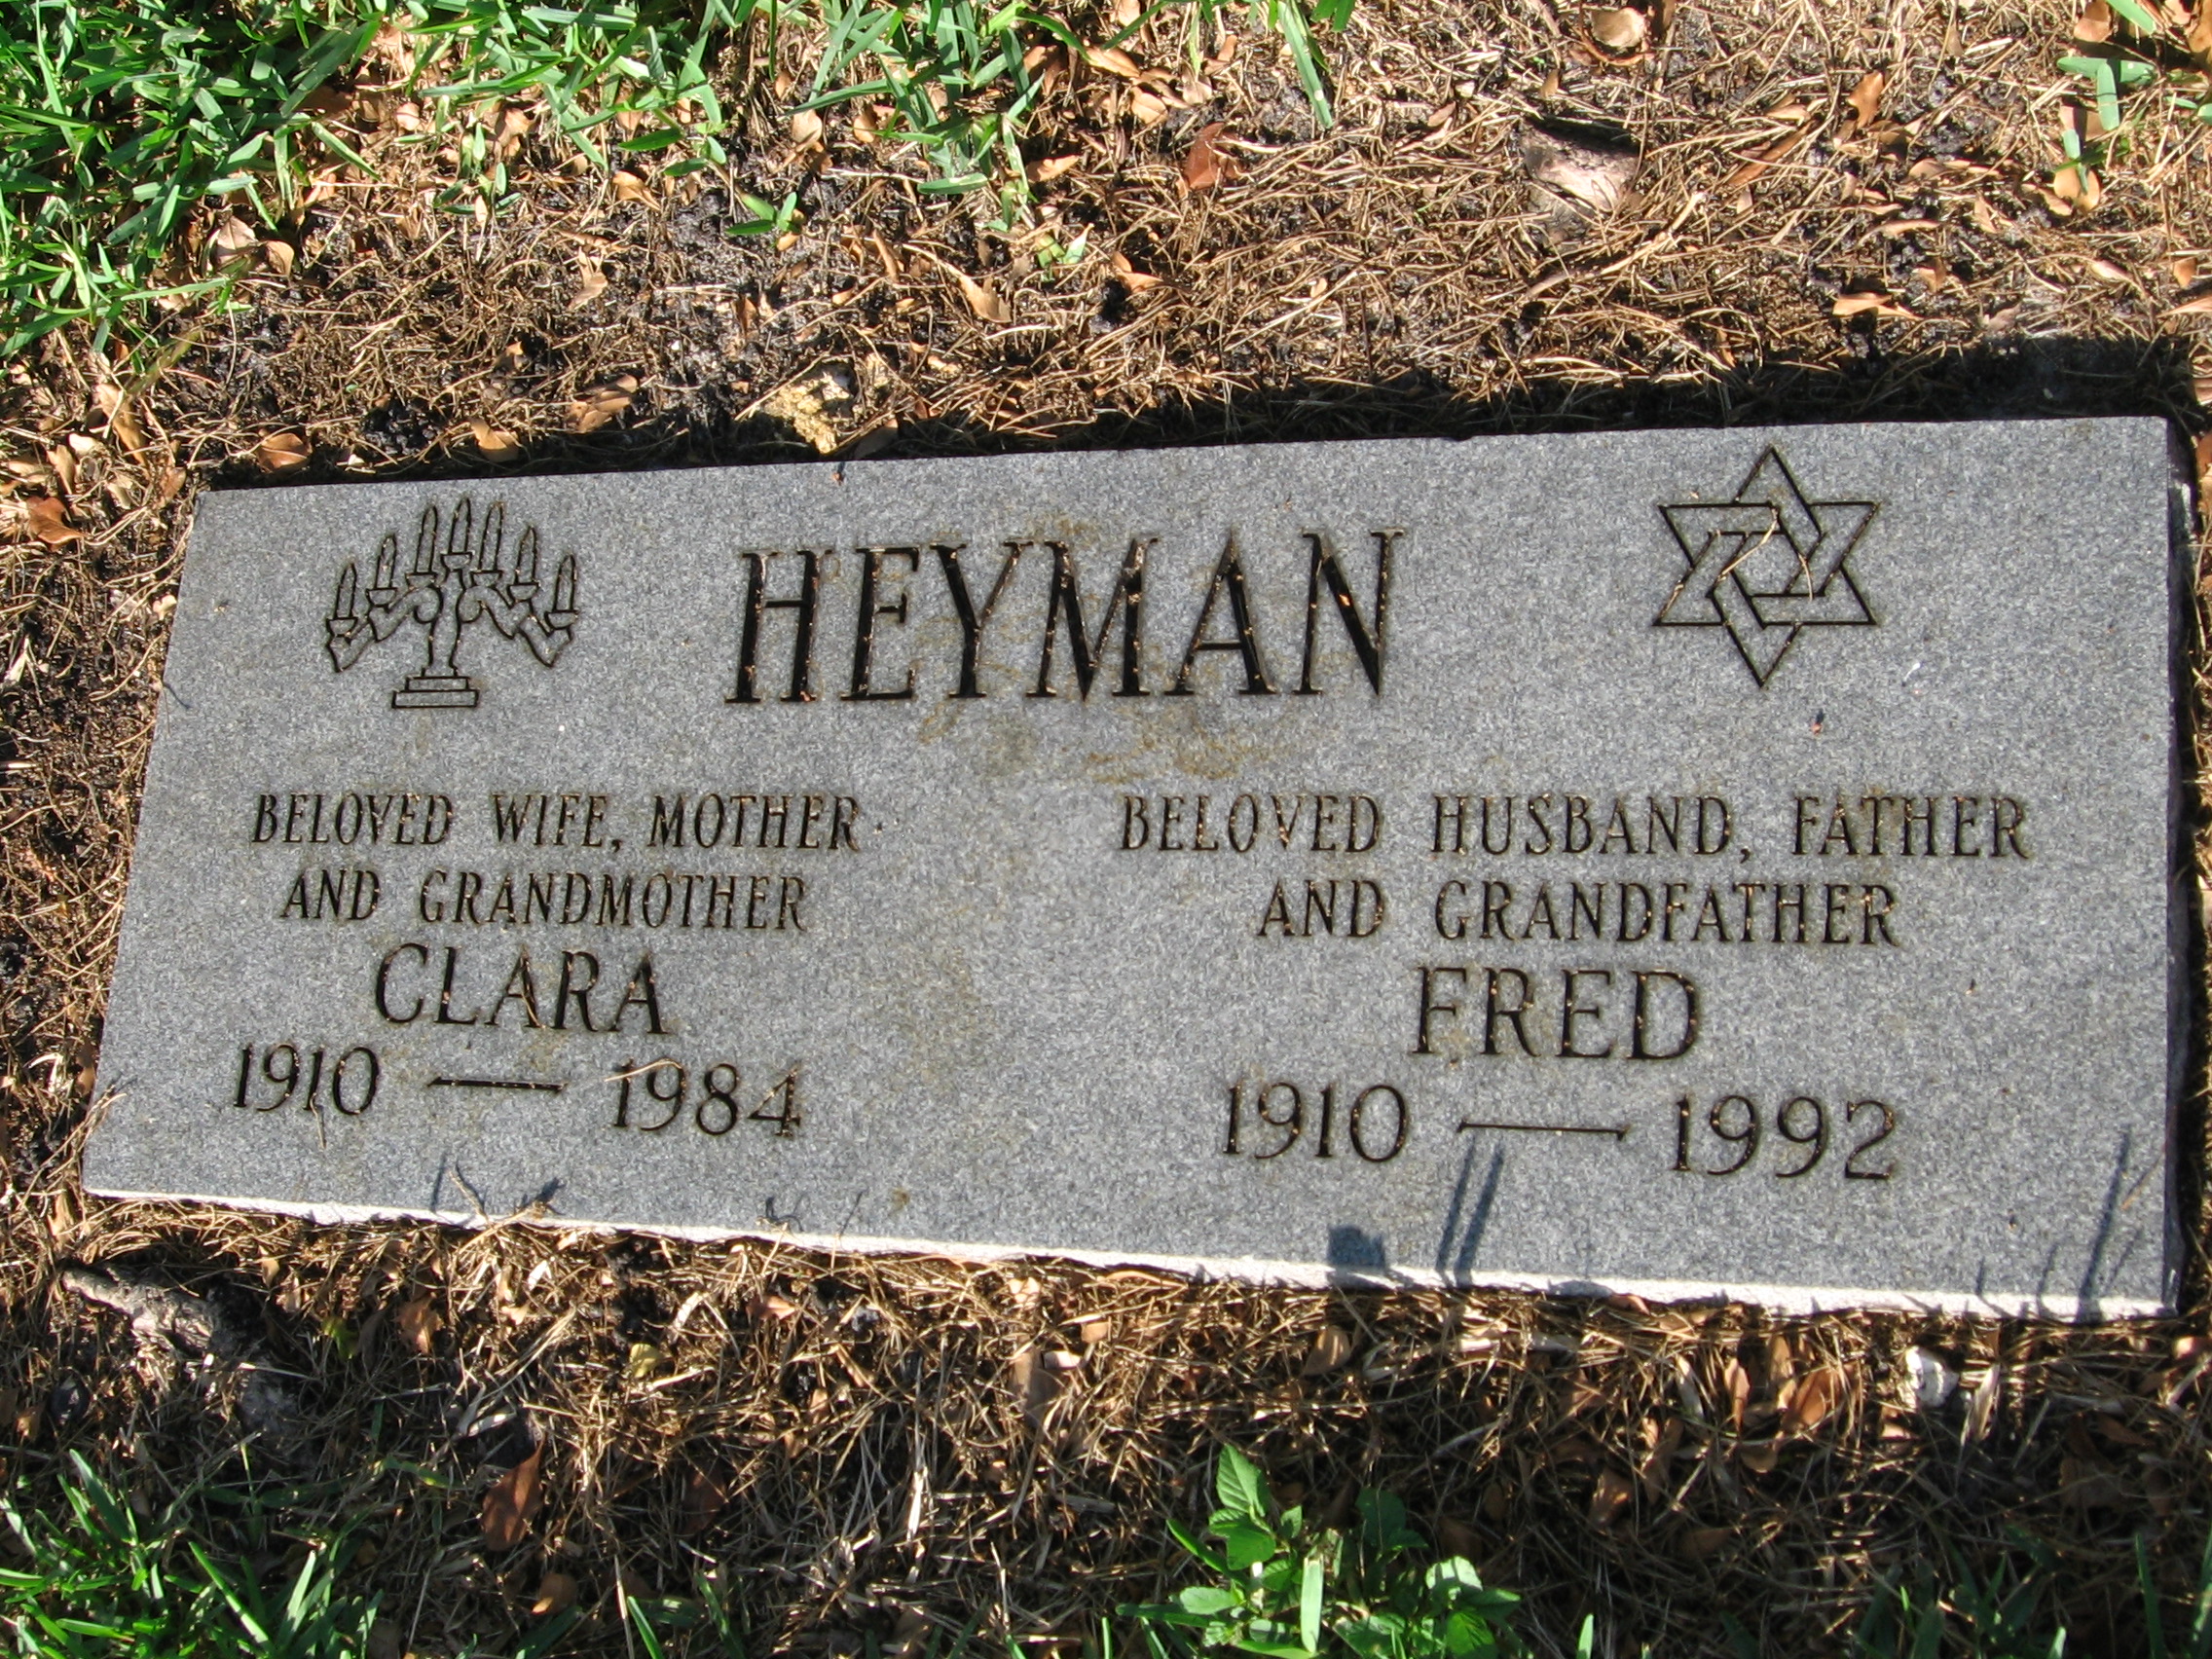 Fred Heyman